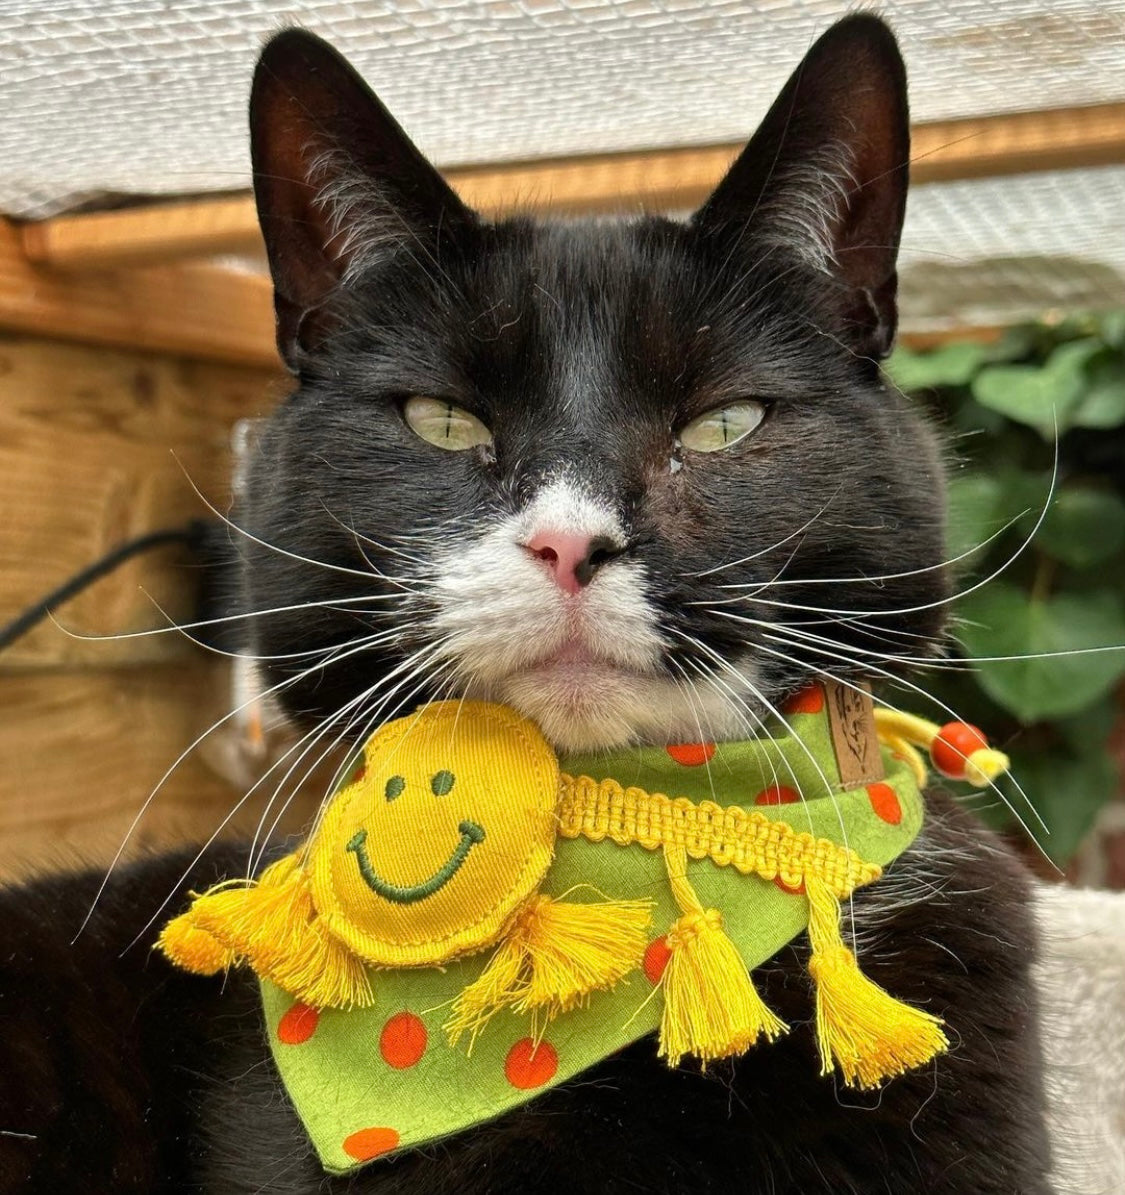 Katzenmodel trägt Katzenhalstuch mit gelbem Smiley und Fransen